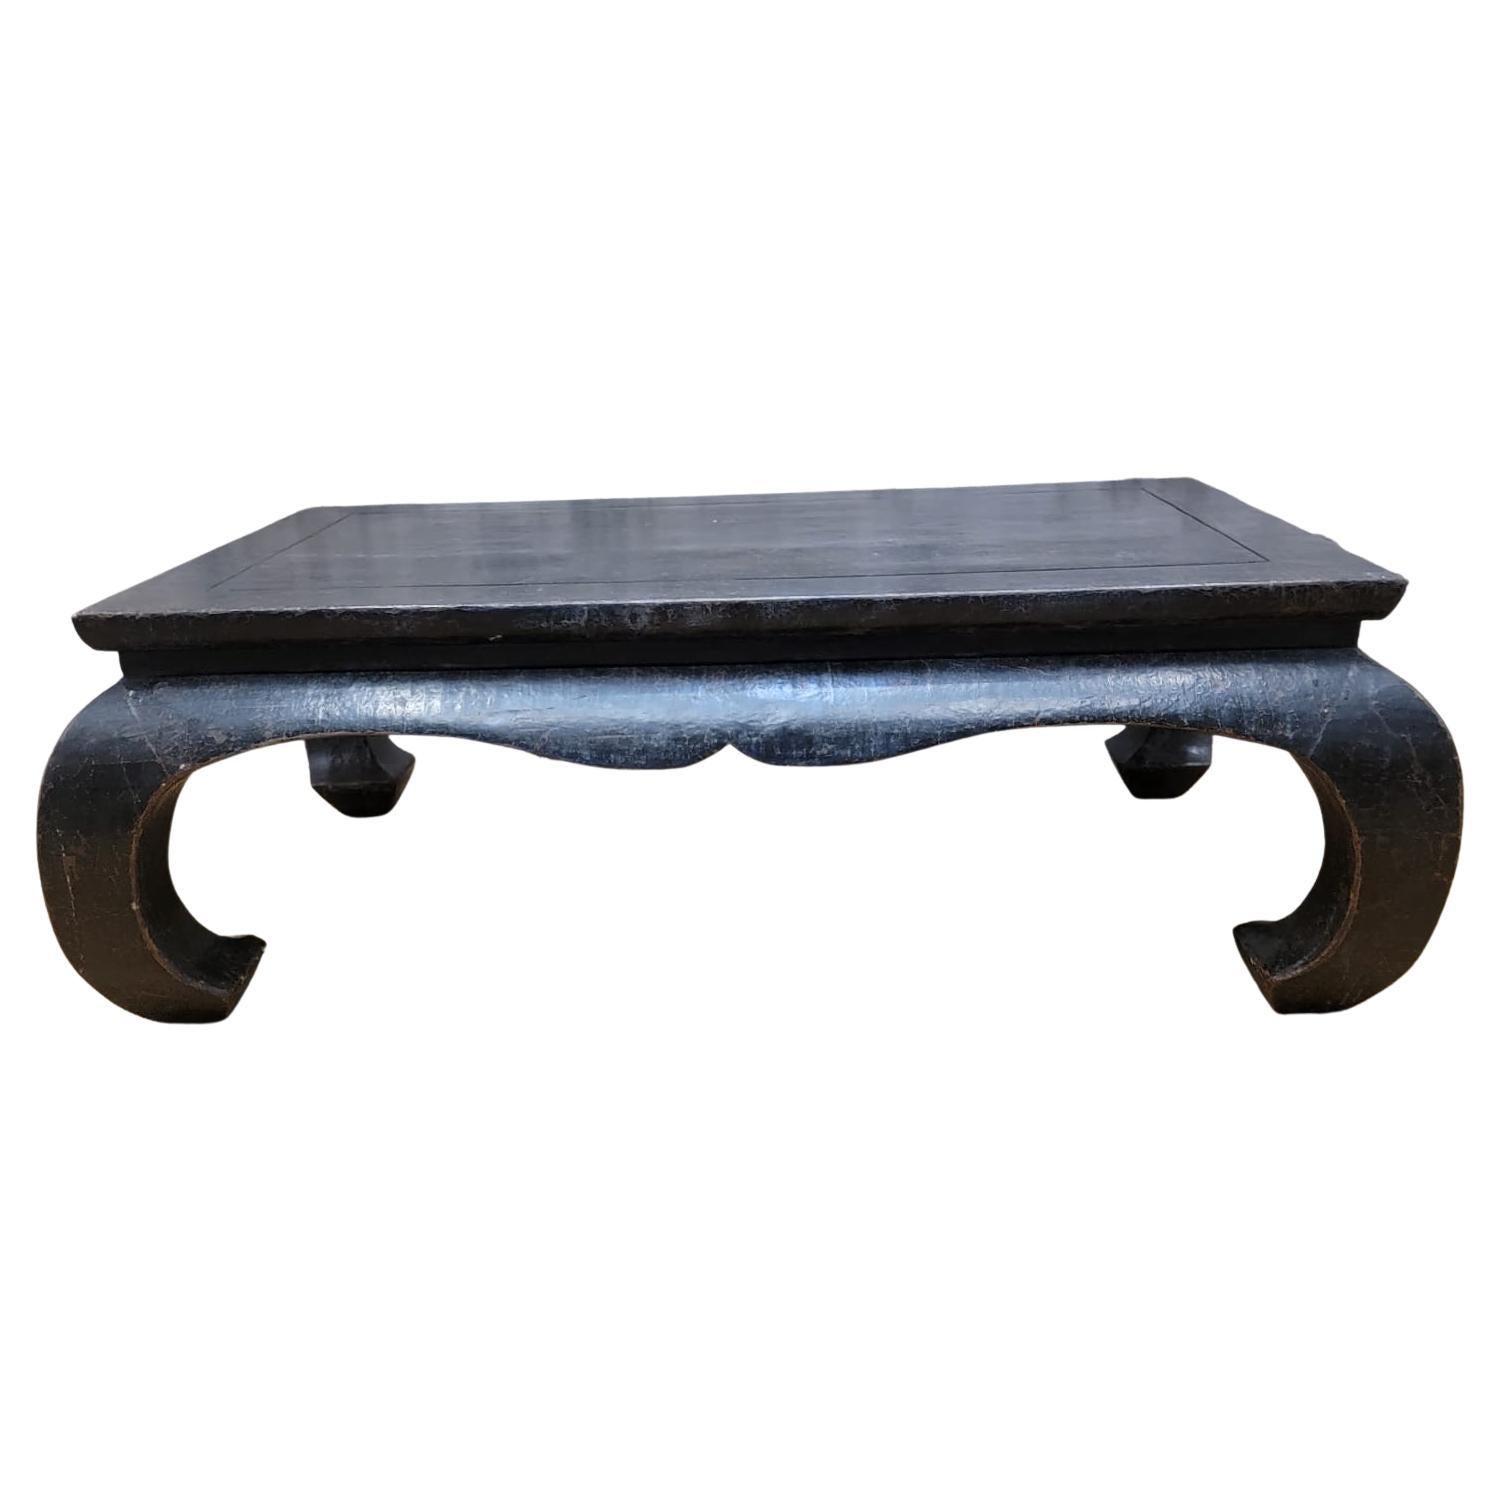 Ancienne table basse en orme laqué et enveloppé de lin de la province de Shanxi, style Kang